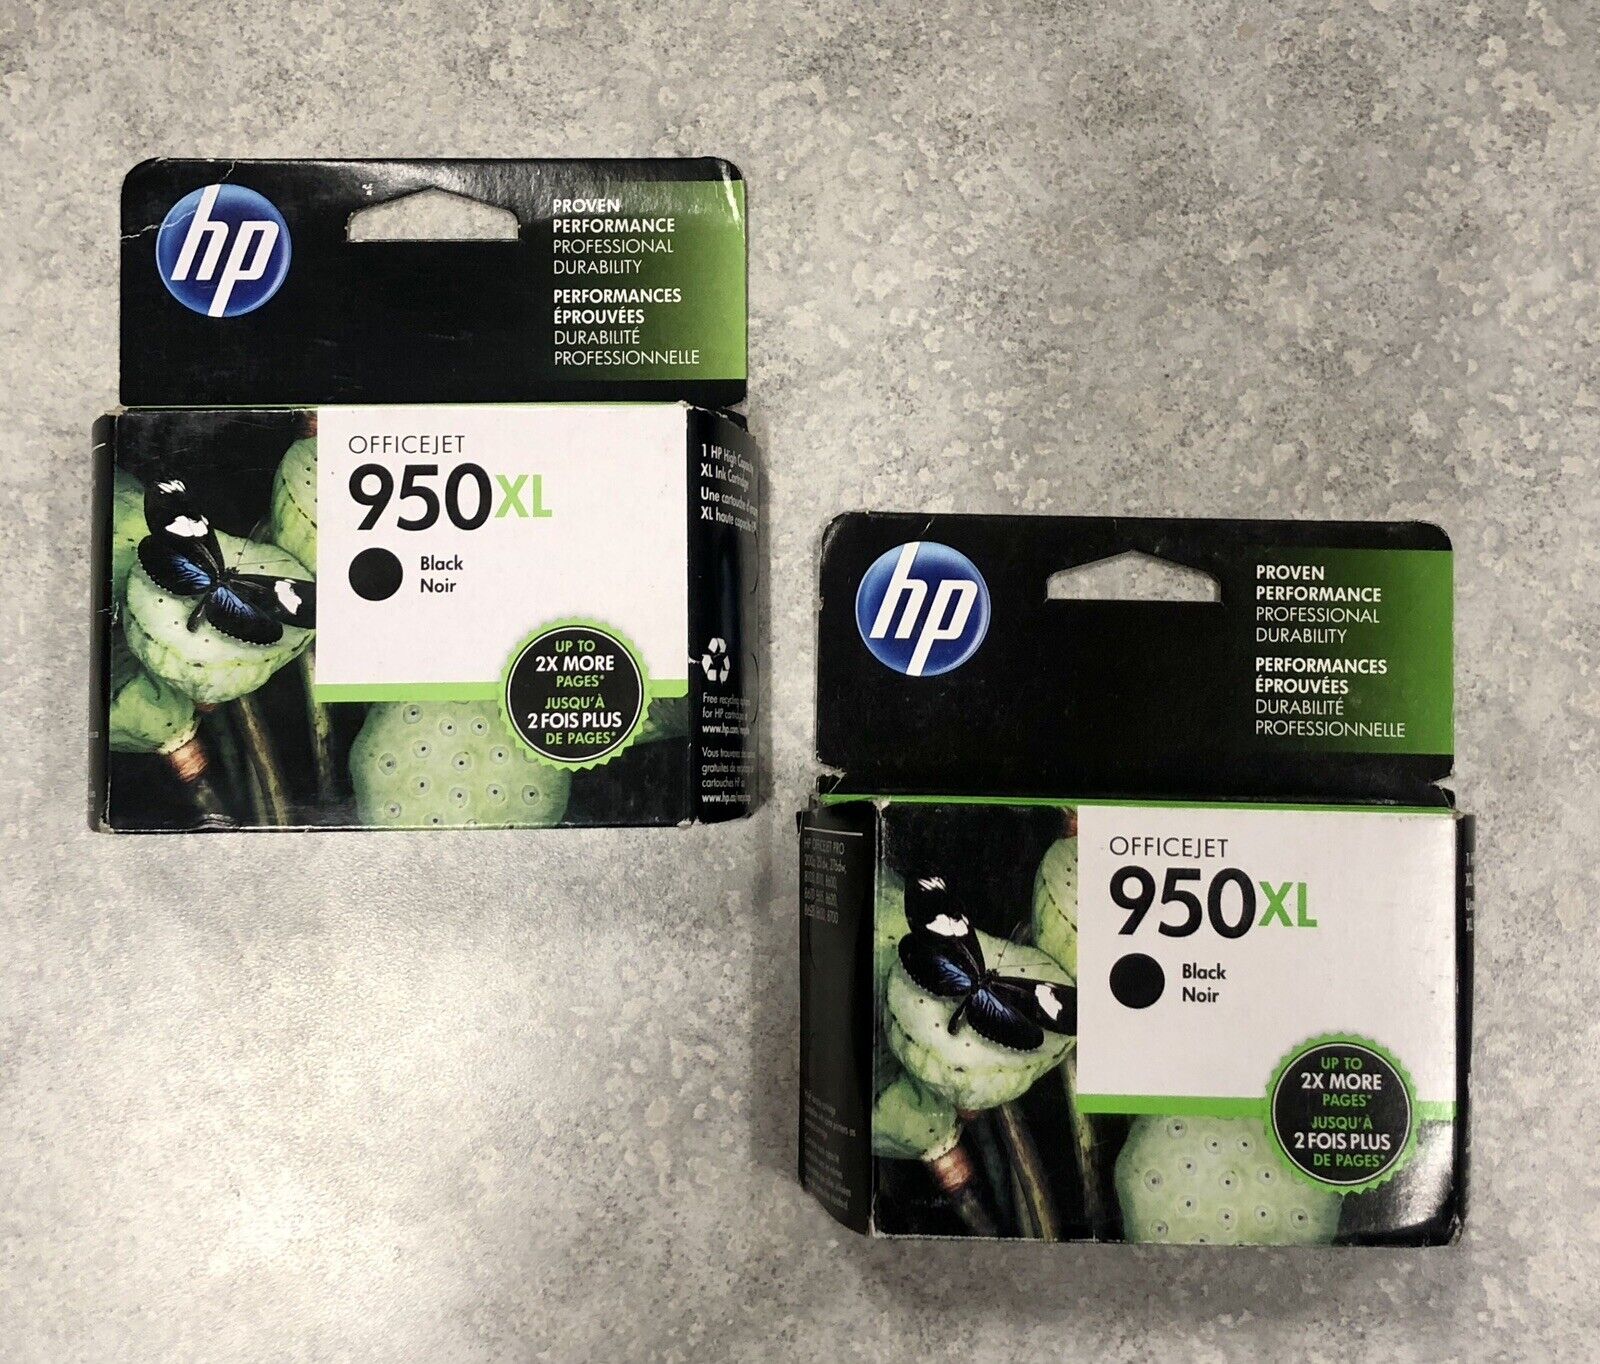 Lot of Two New hp Officejet 950XL Black Ink Cartridges (“Warranty Ends” 2017)